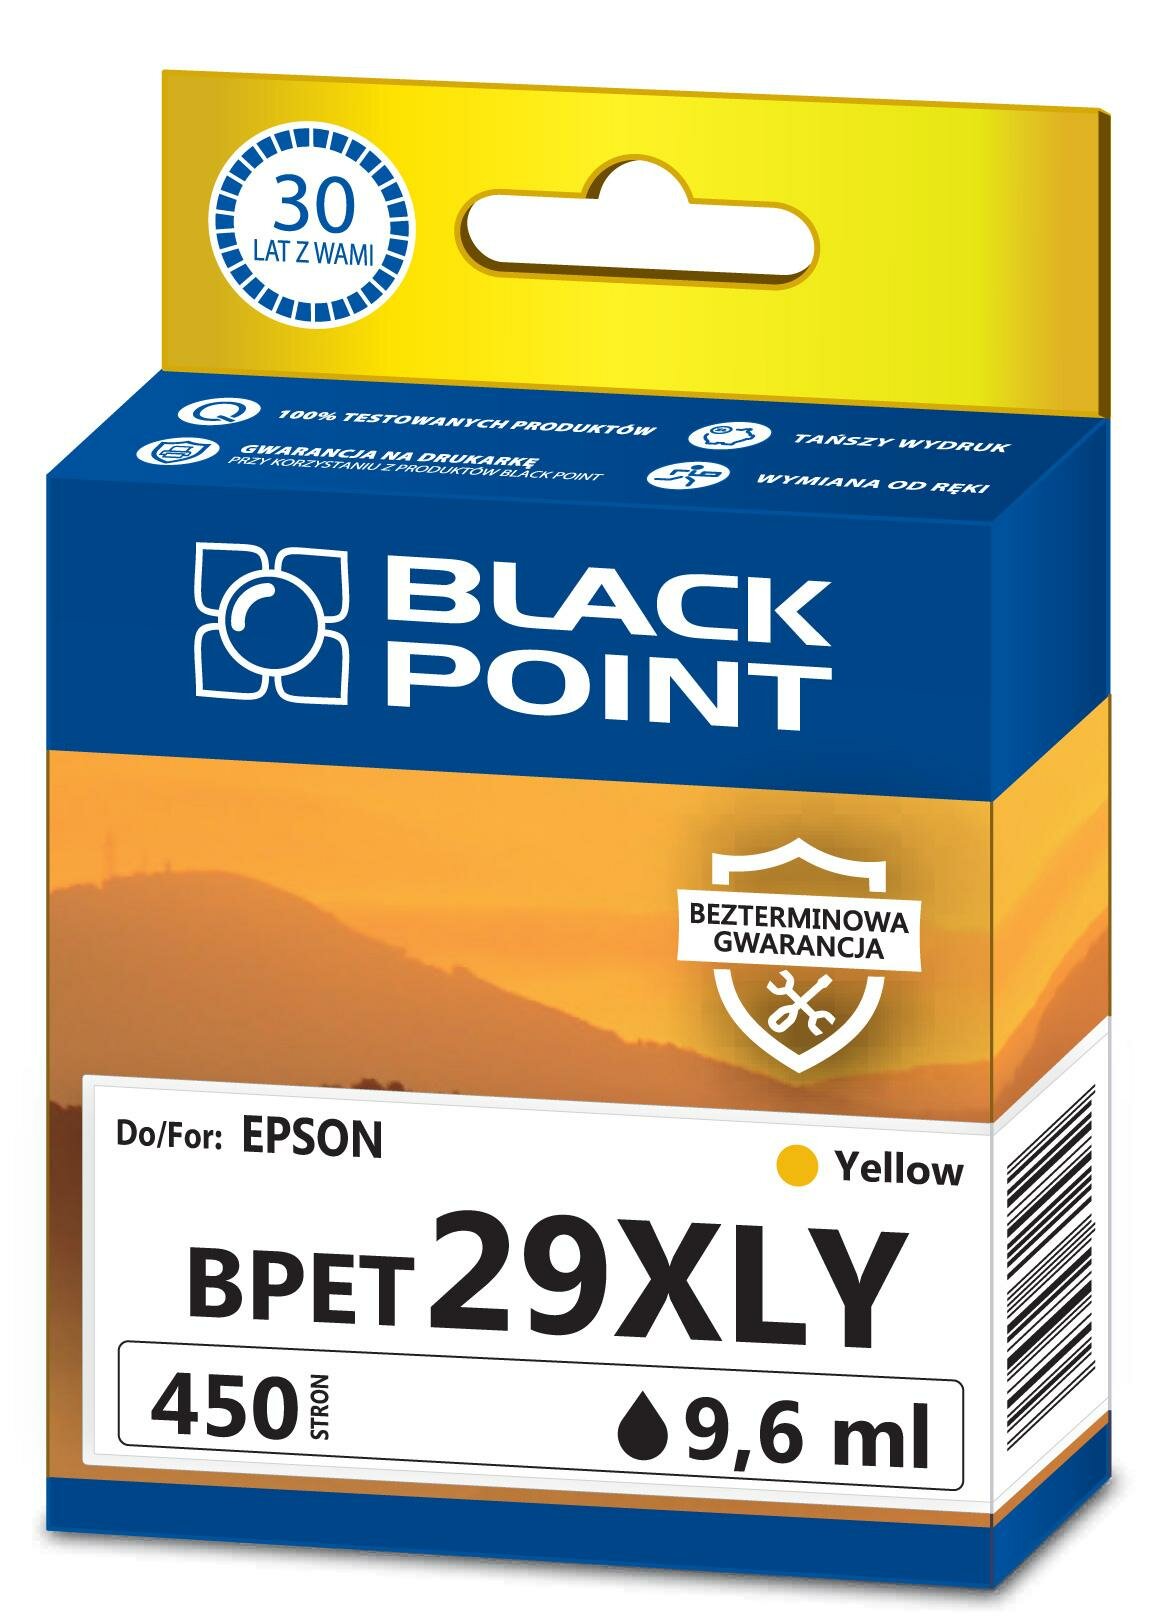 Kartridż atramentowy Black Point BPET29XLY żółty frontem 